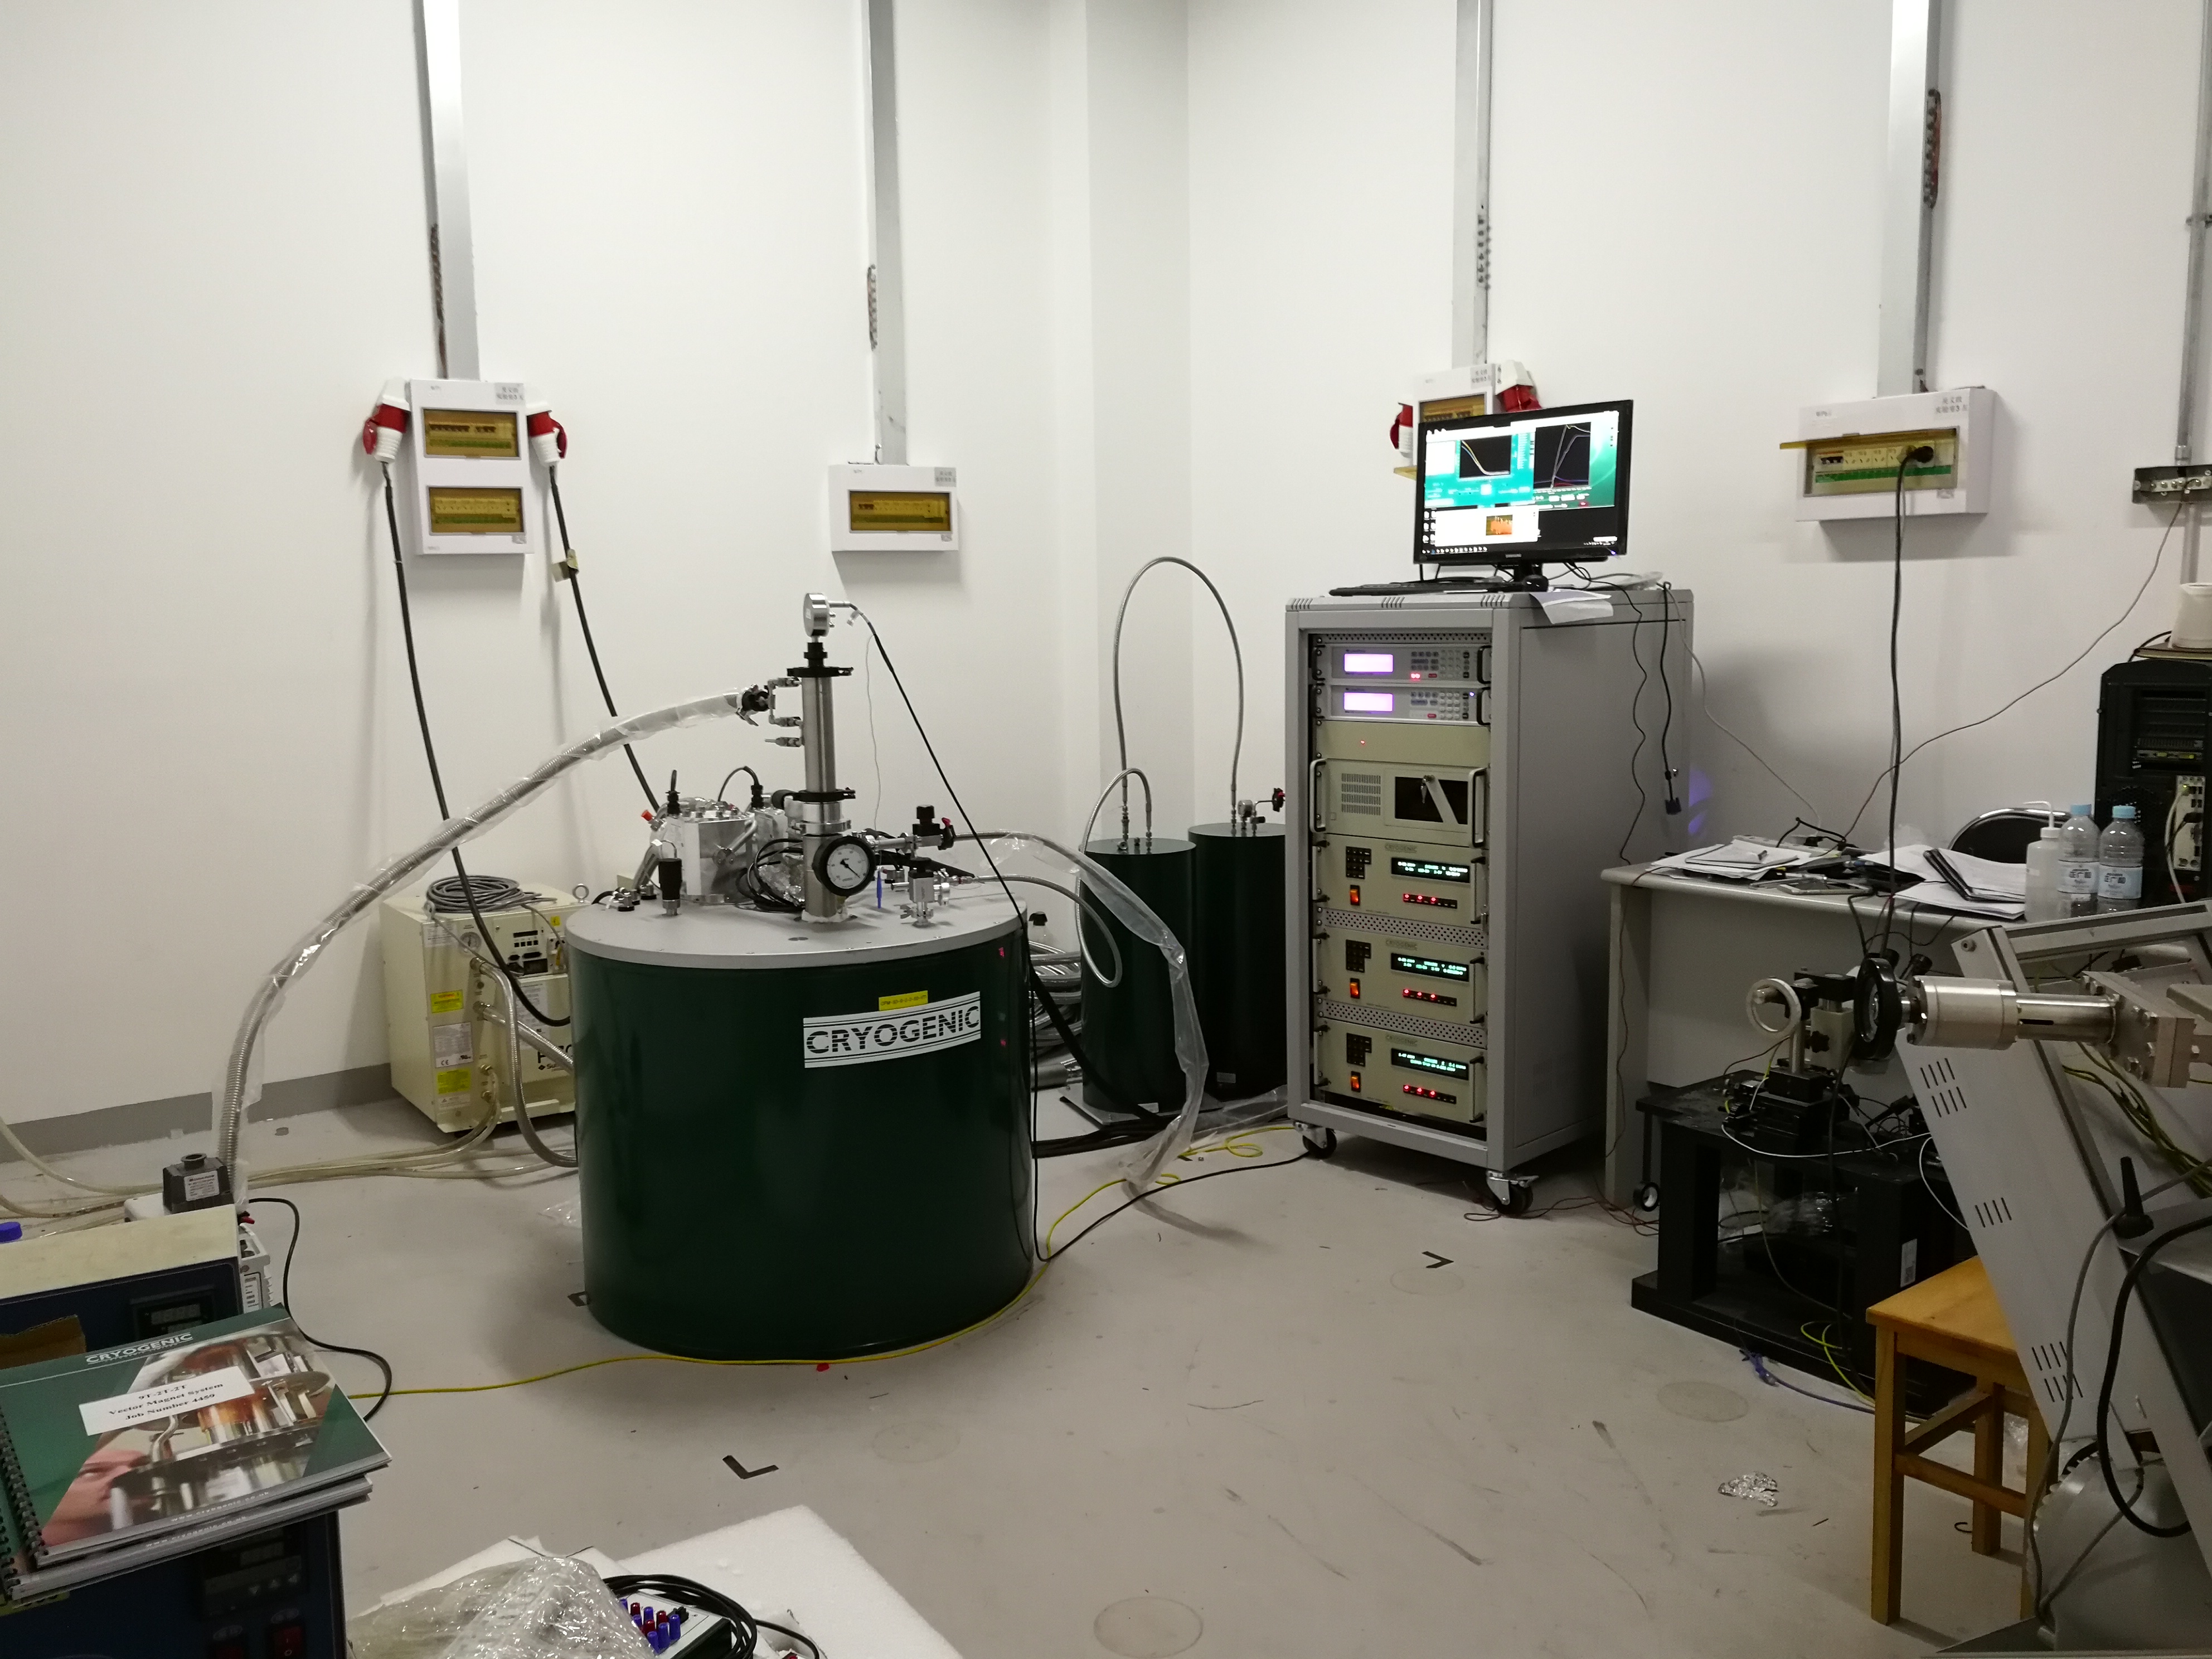 兰州大学、复旦大学、清华大学、大连理工大学订购的无液氦矢量超导磁体安装调试完成